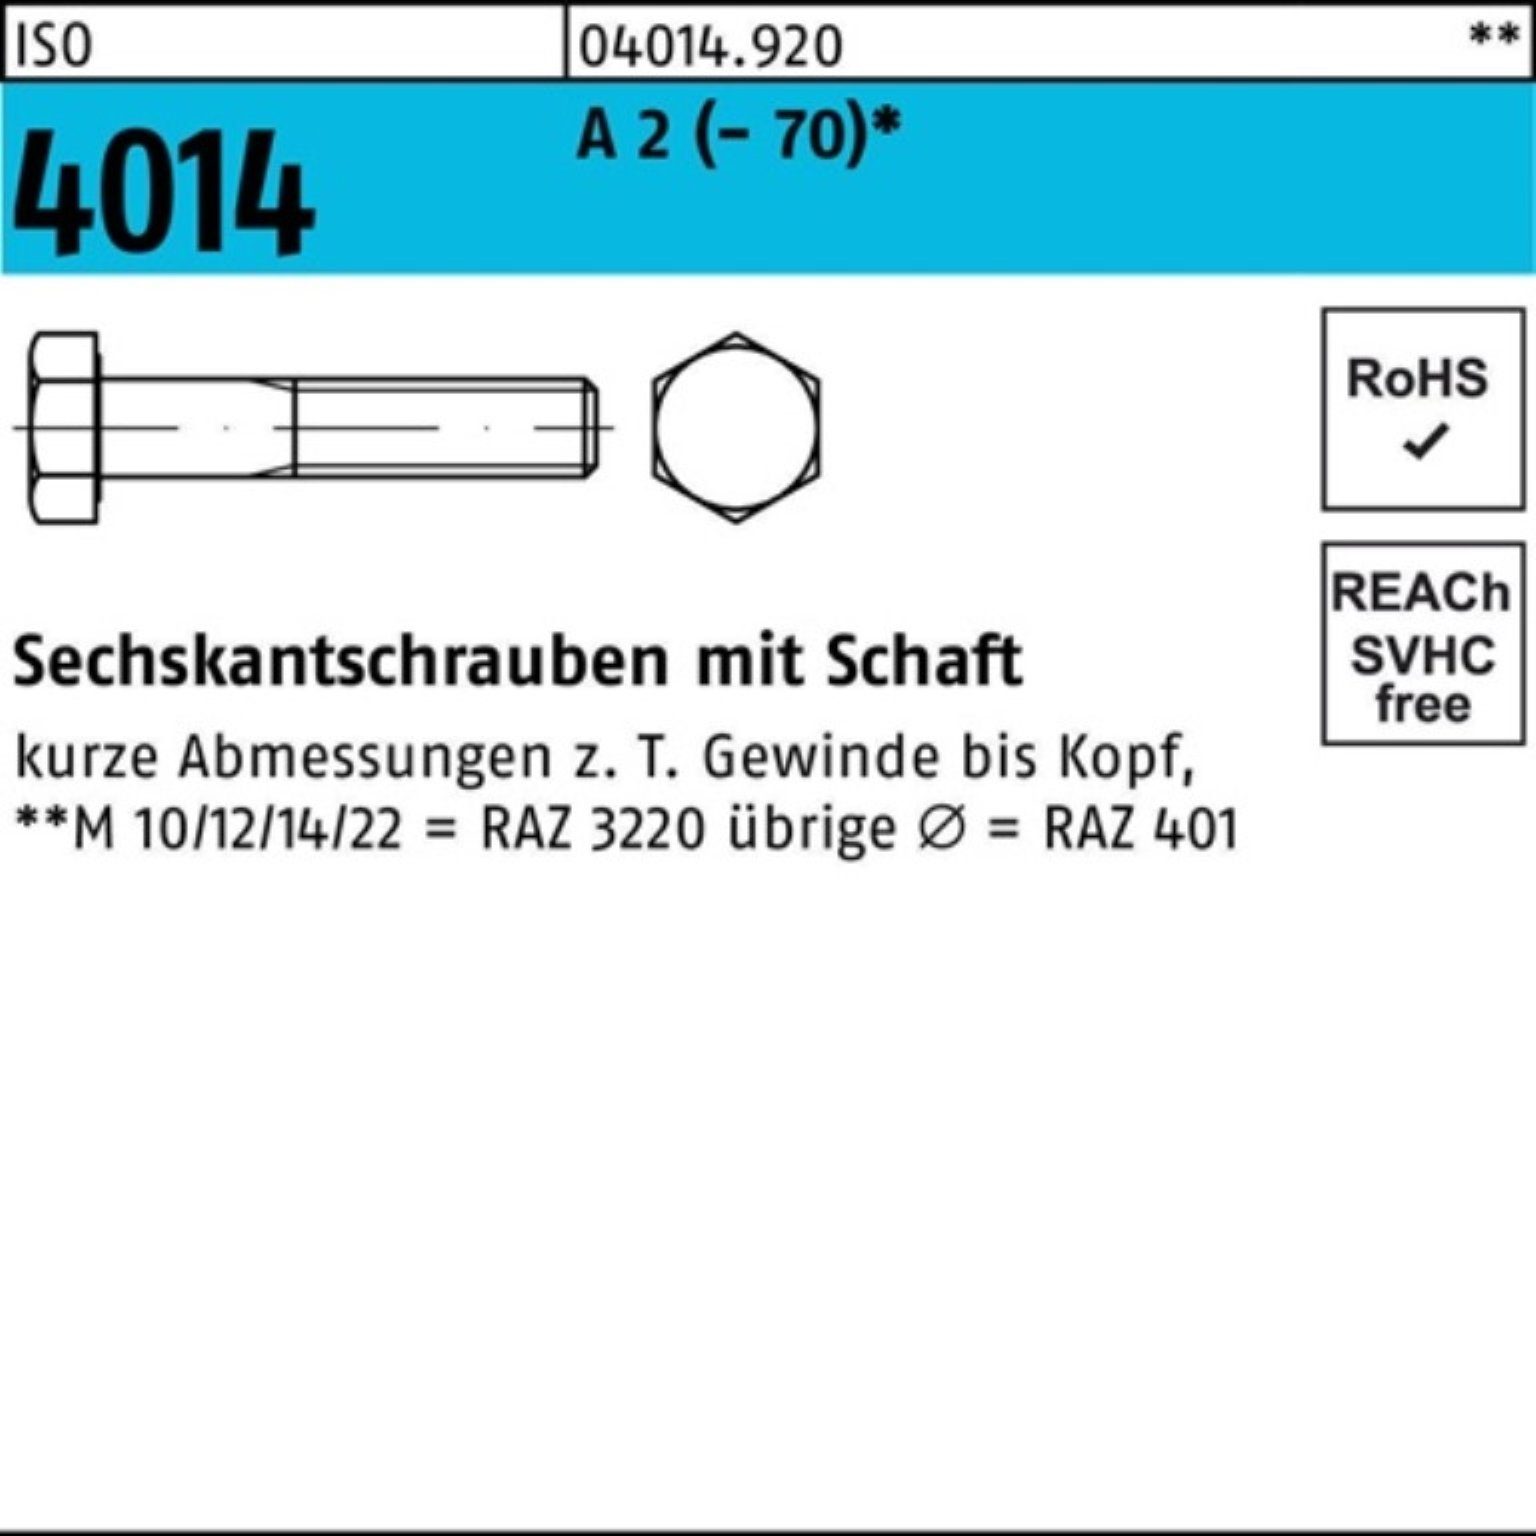 Bufab Pack Sechskantschraube 100er A St Schaft ISO Sechskantschraube M20x 1 4014 2 120 (70)